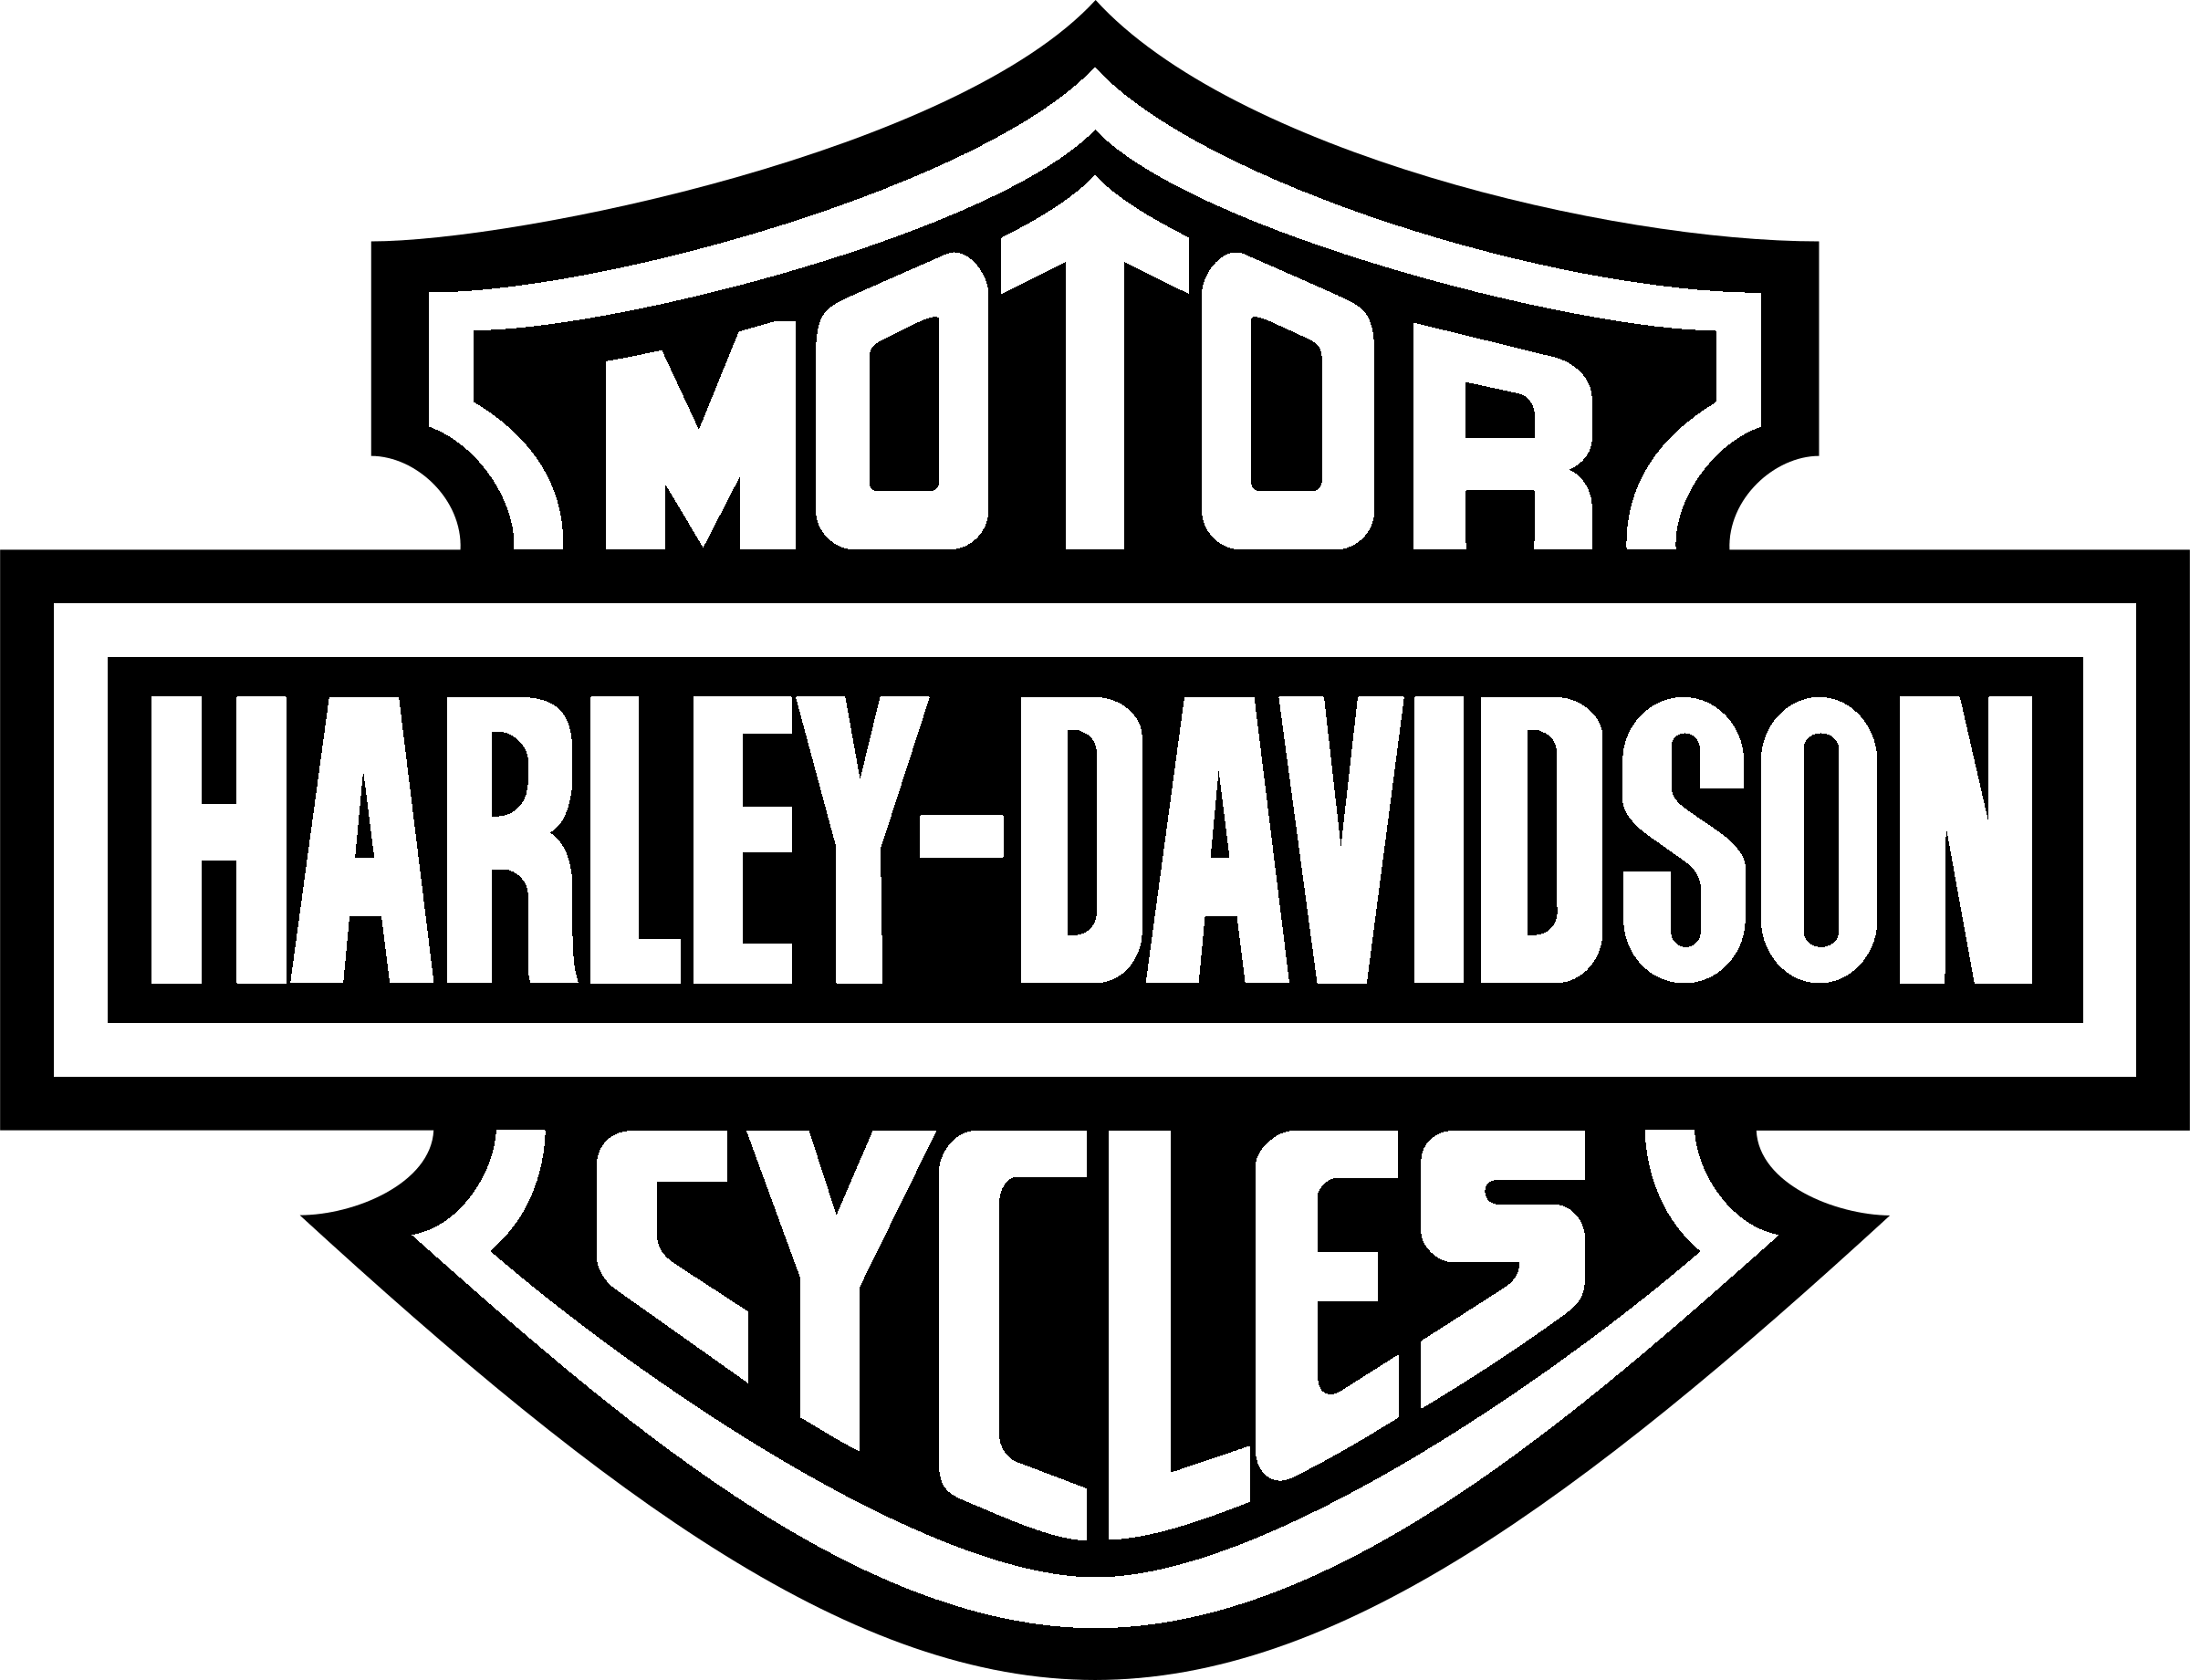 Black and White Harley-Davidson Logo - Harley Davidson Logo PNG Transparent & SVG Vector